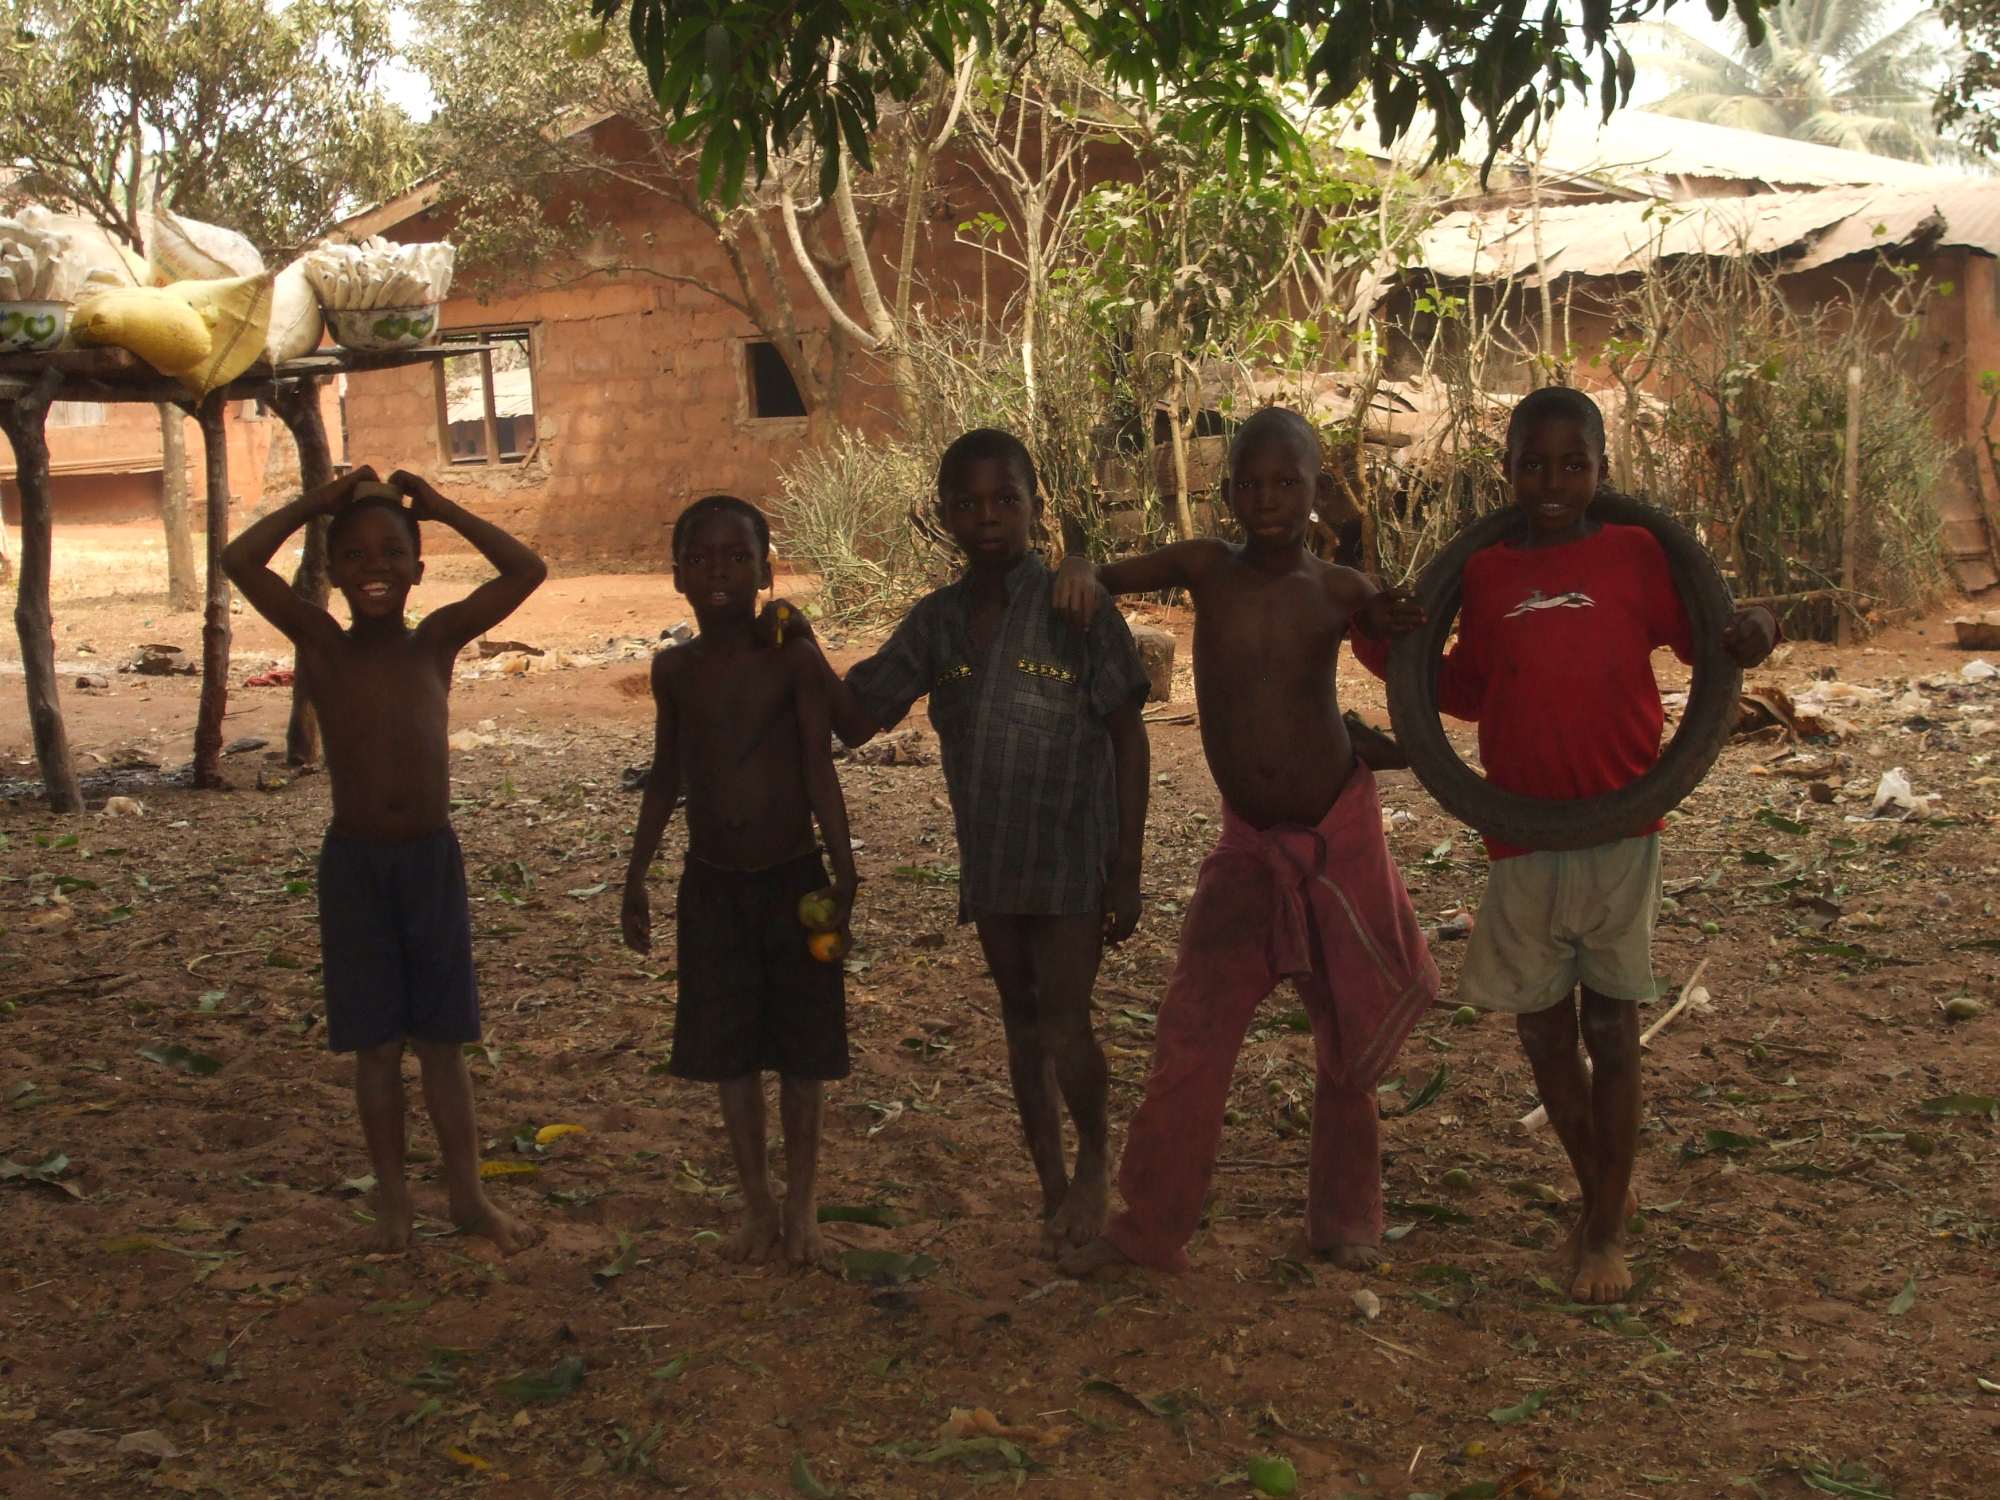 Fünf afrikanische Jungen in einem Dorf in Nigeria, lächelnd und frech, gekleidet in kurze Hosen und T-Shirts. Der Boden ist trocken und karg.